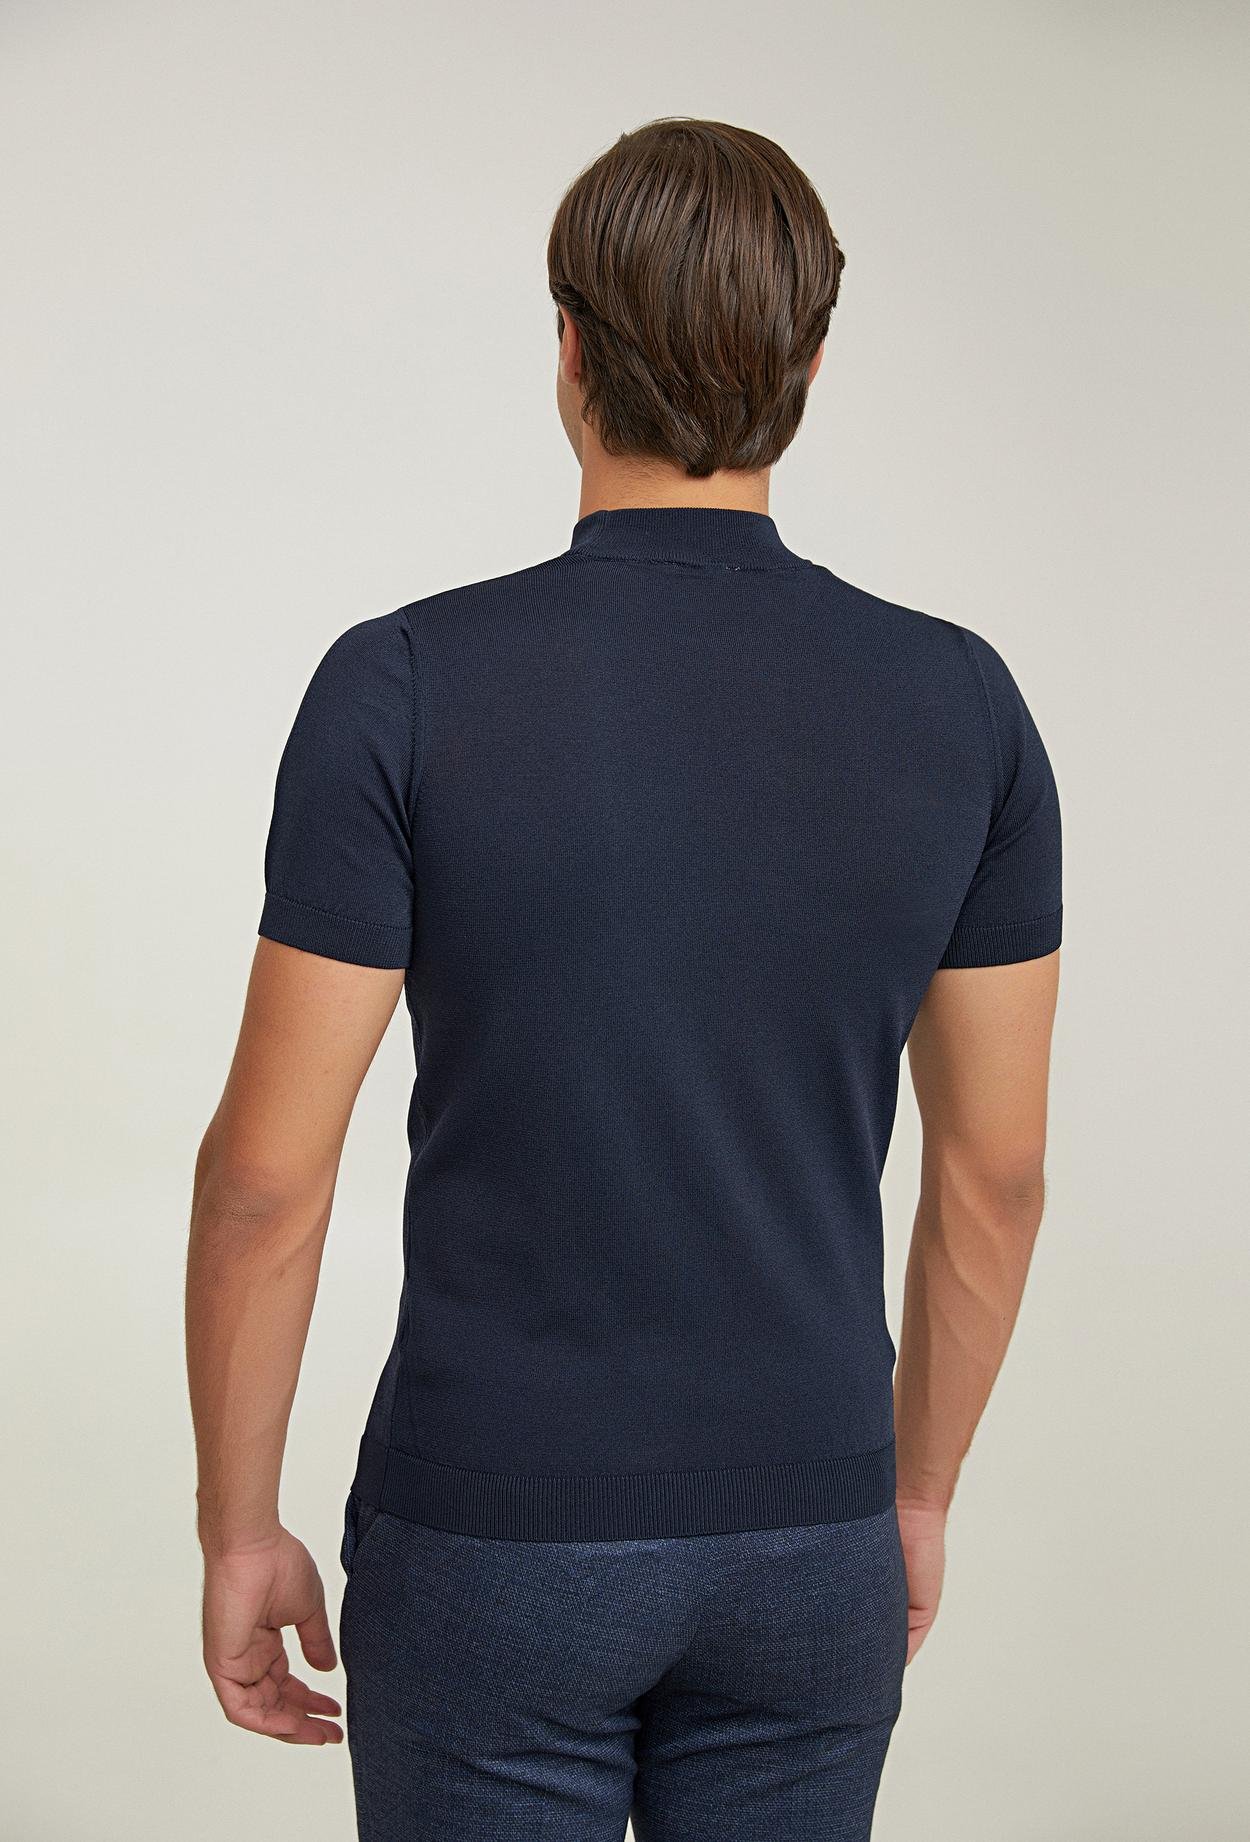 Twn Slim Fit Lacivert Rayon Örme T-Shirt